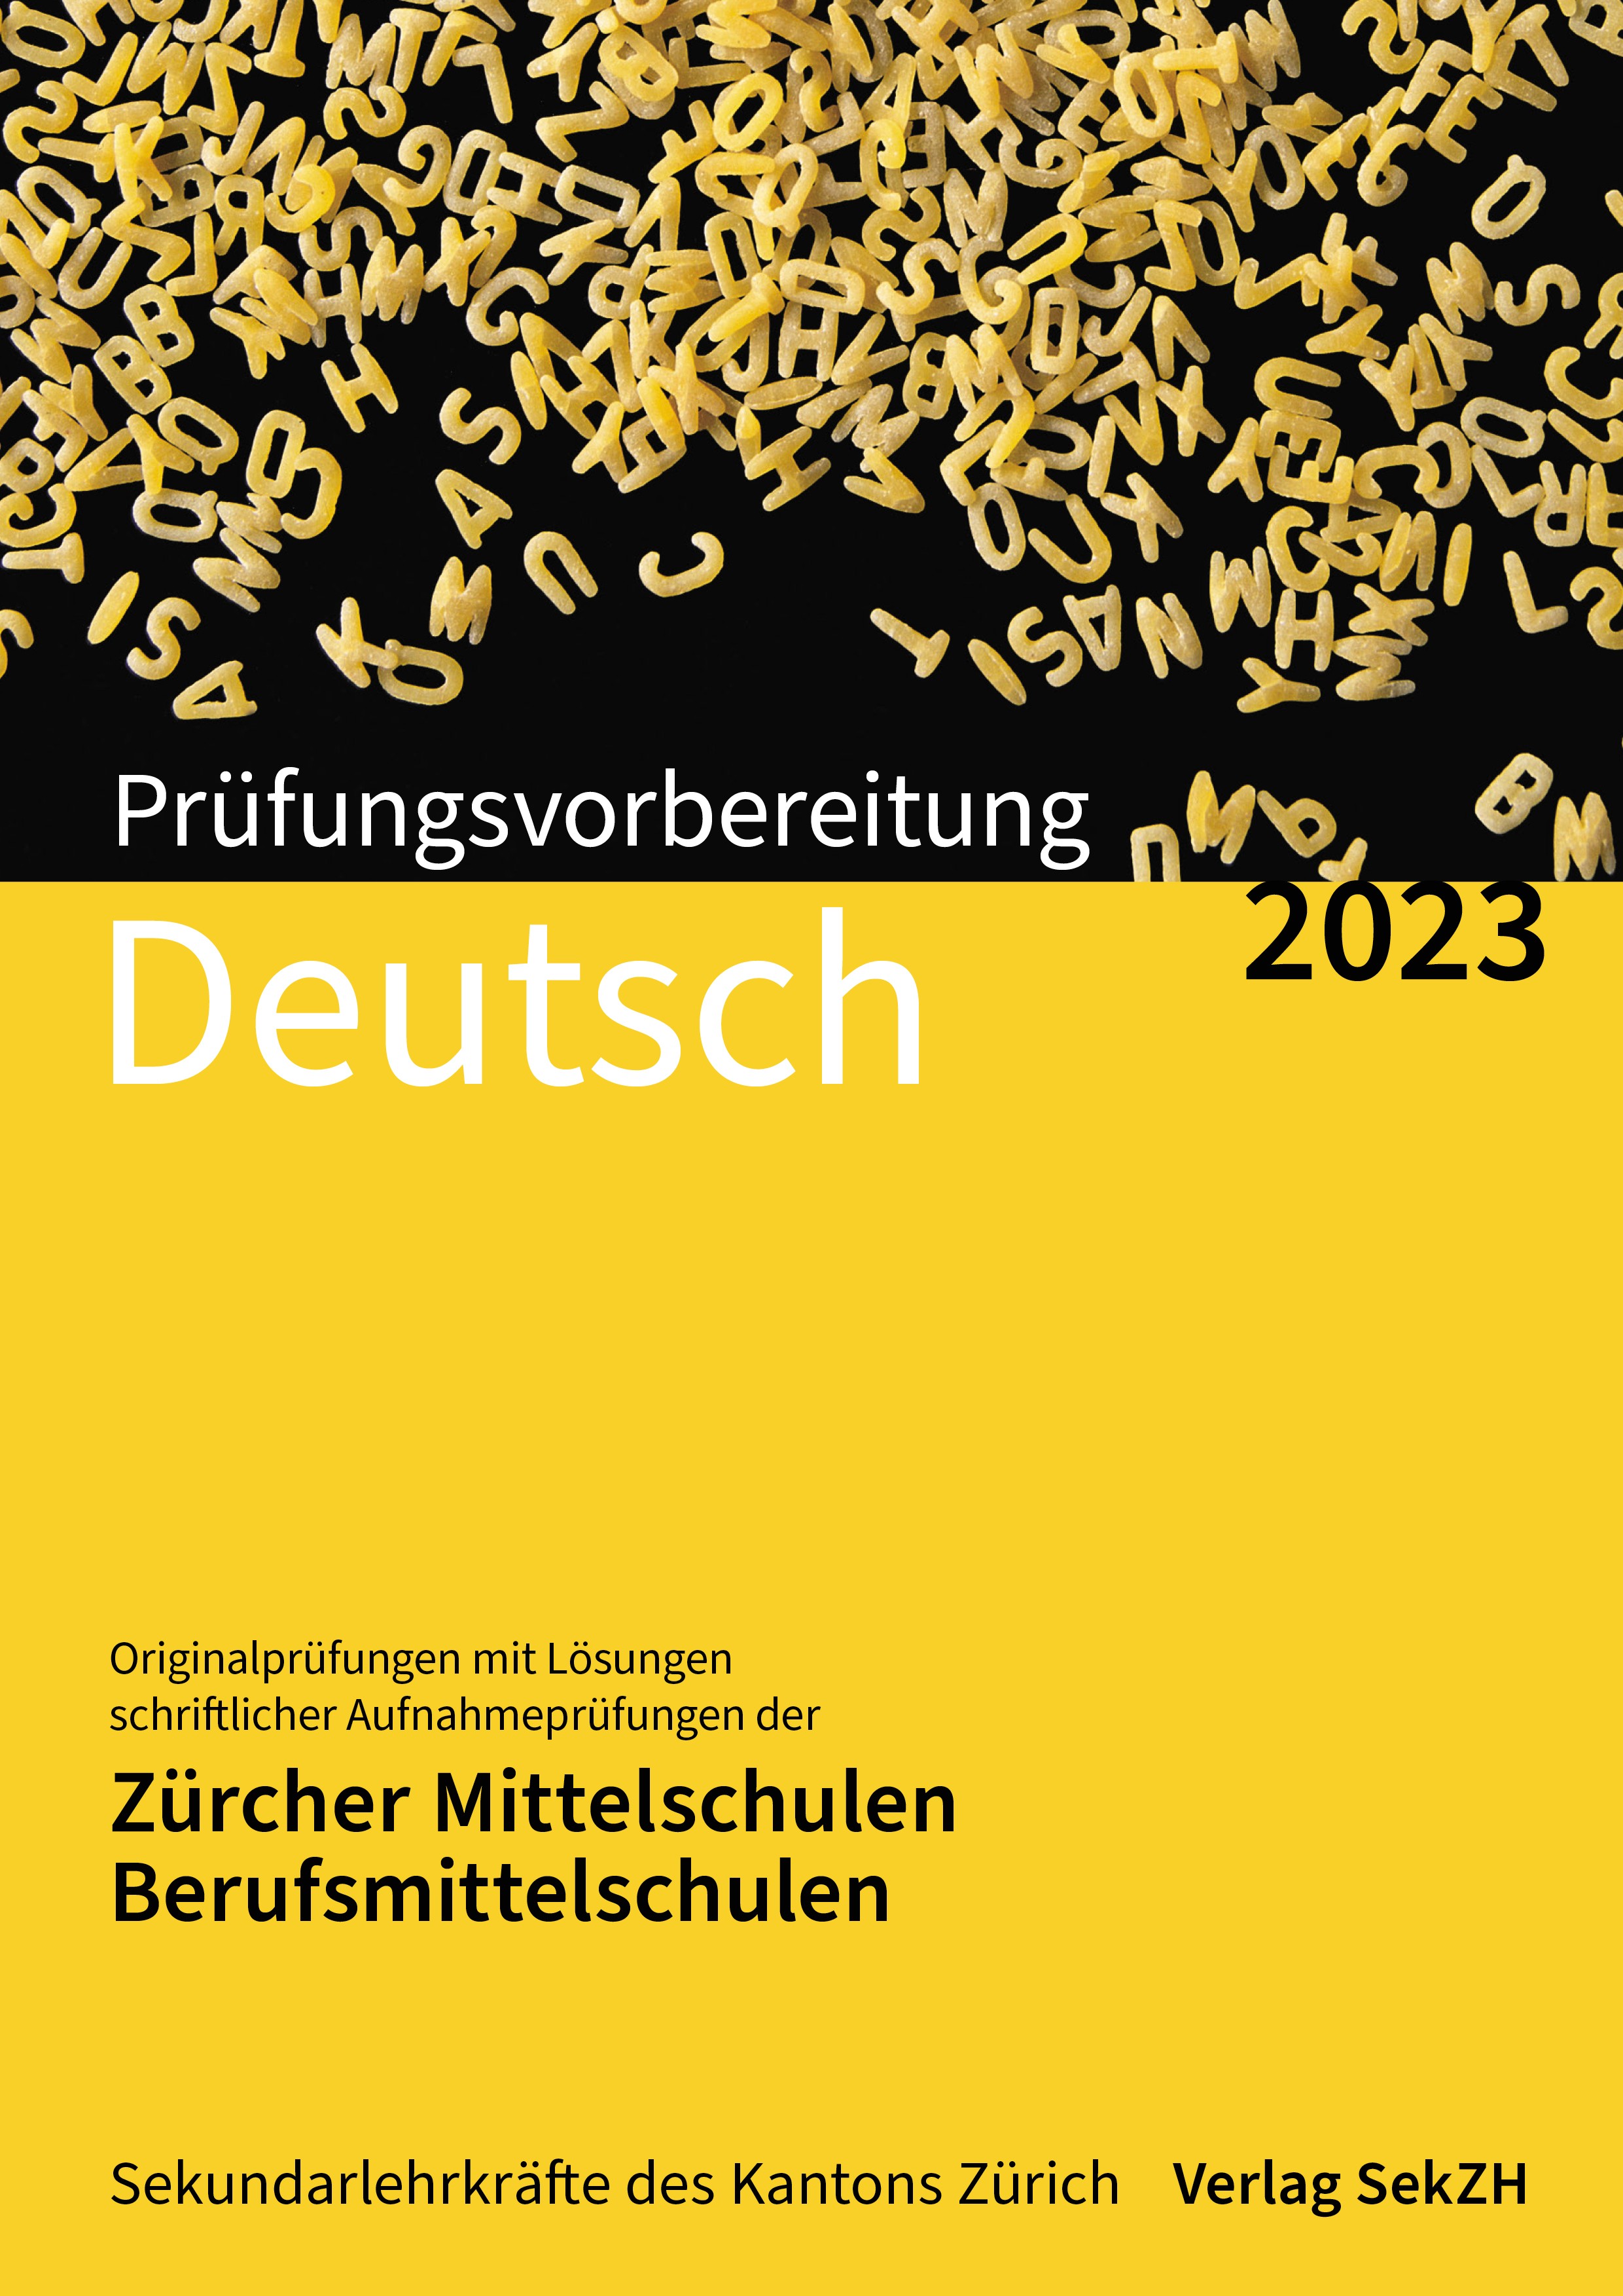 P201 - Prüfungsvorbereitung Deutsch 2023